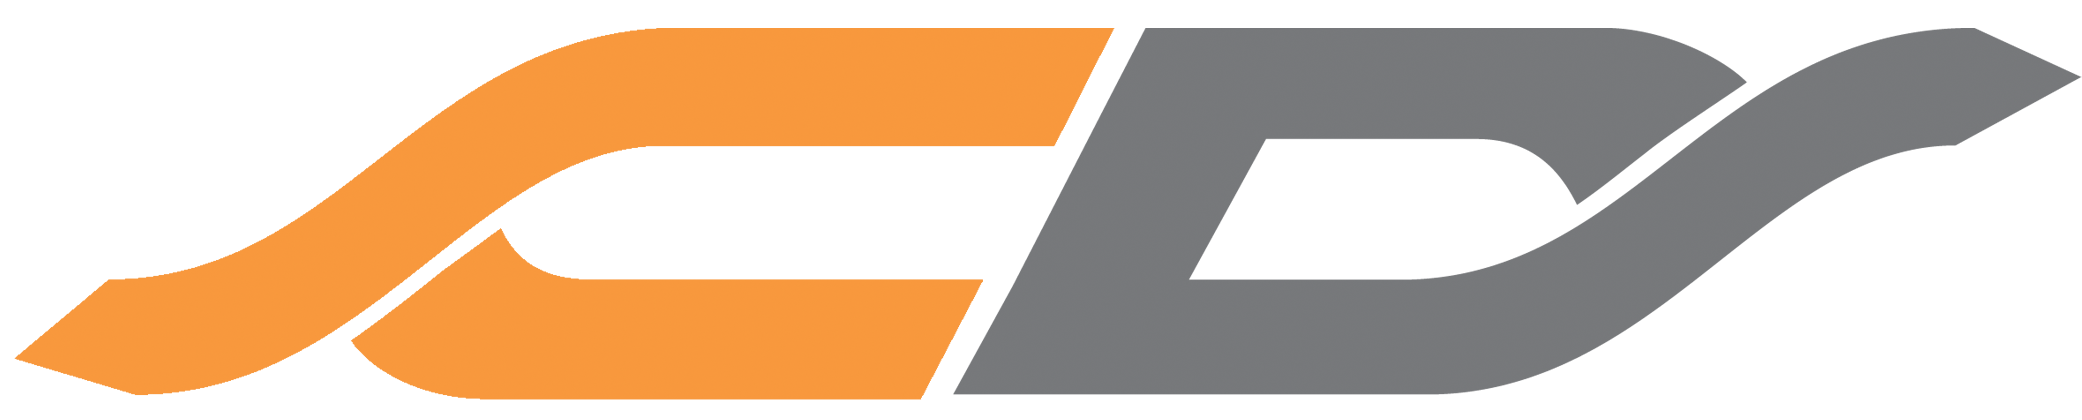 Illustration logo